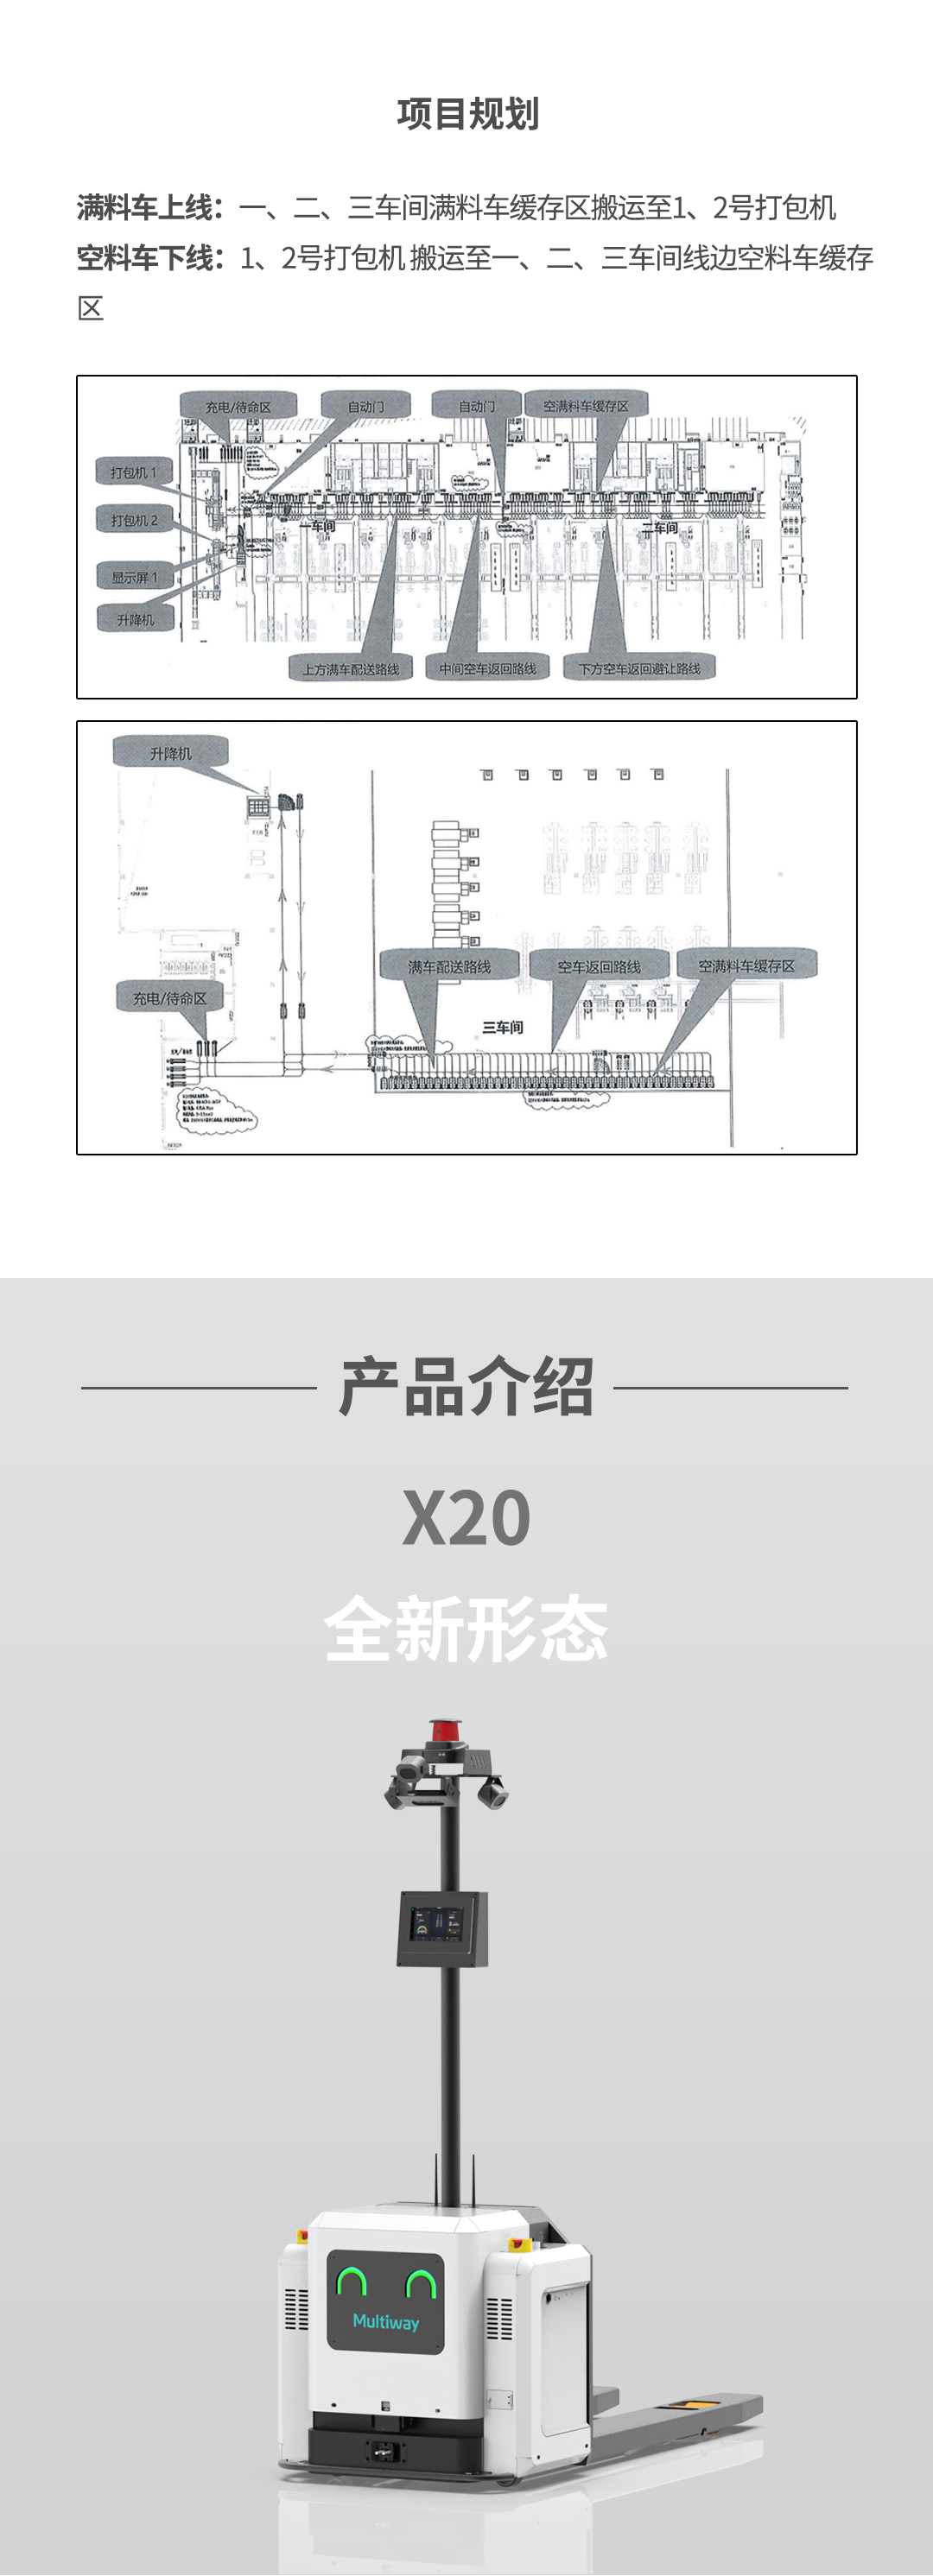 劢微机器人公司微蜂X20在纺织工厂解决方案